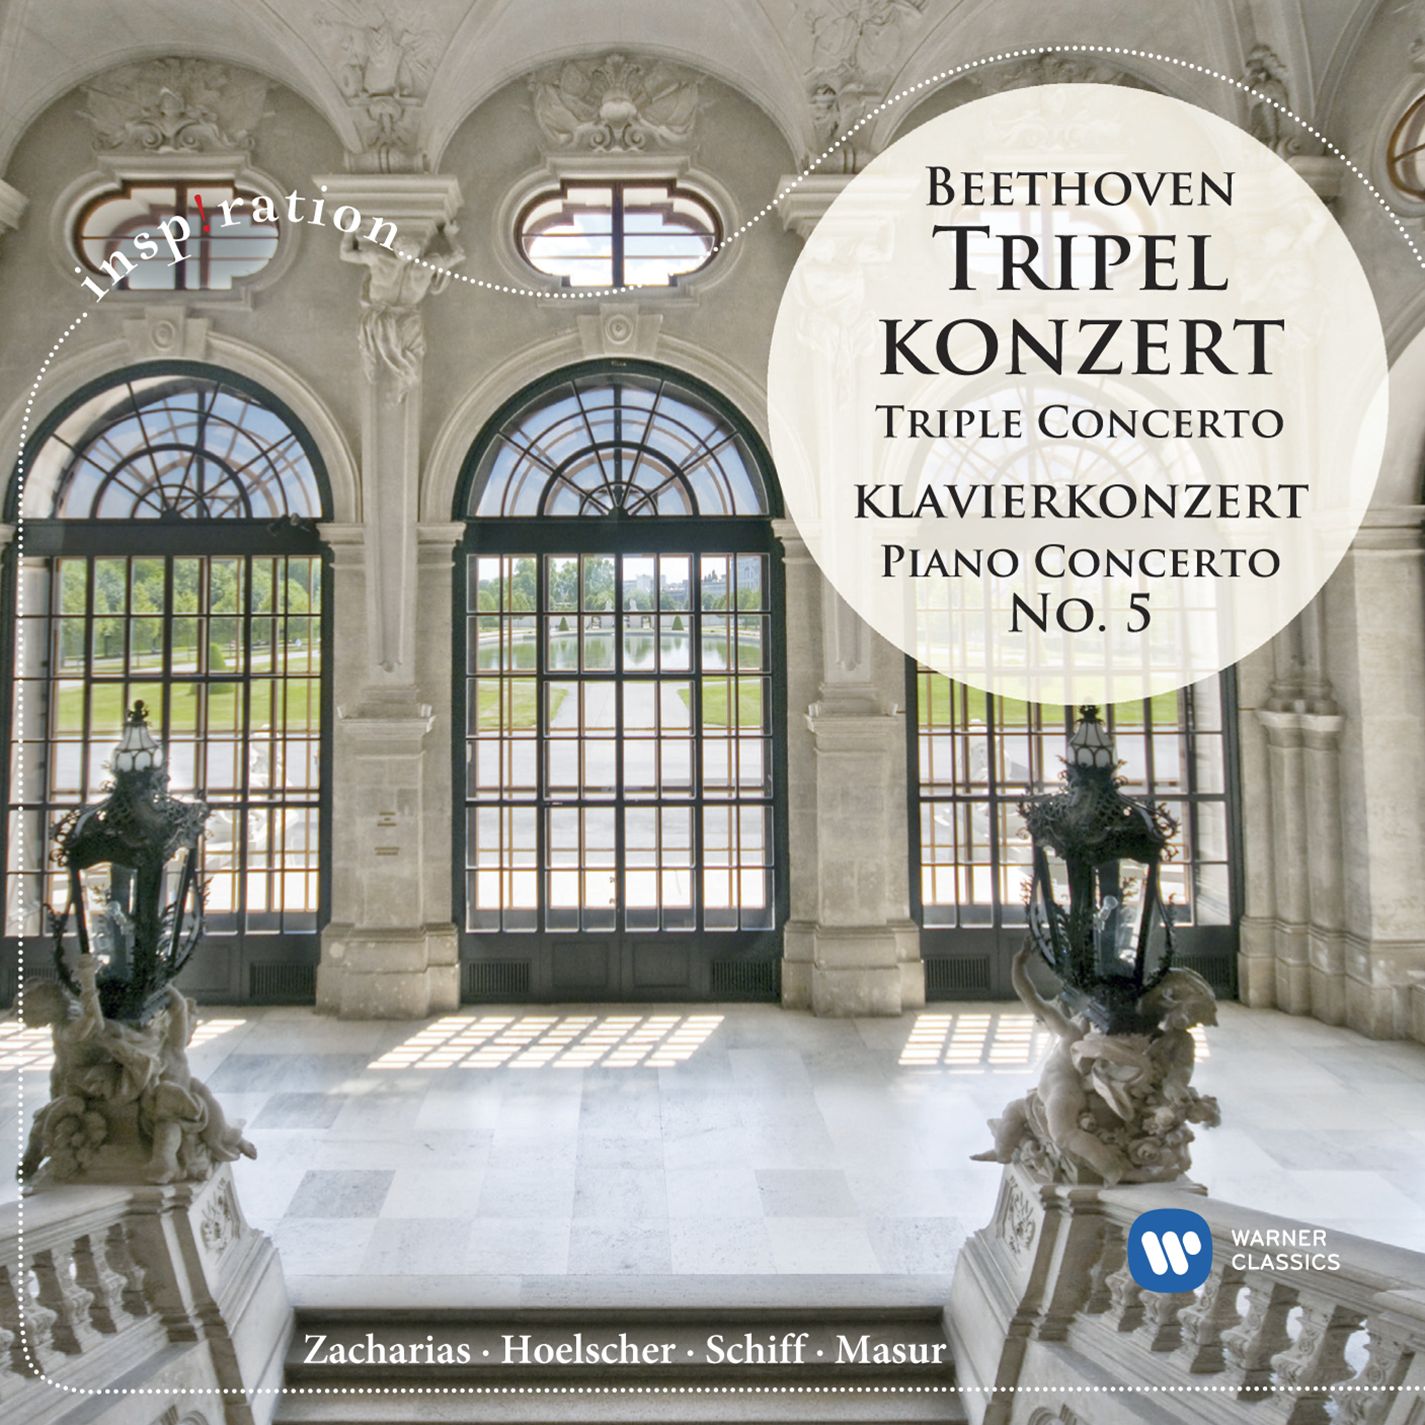 Konzert fü r Klavier, Violine, Violoncello und Orchester Cdur op. 56 " Tripelkonzert": III. Rondo alla polacca